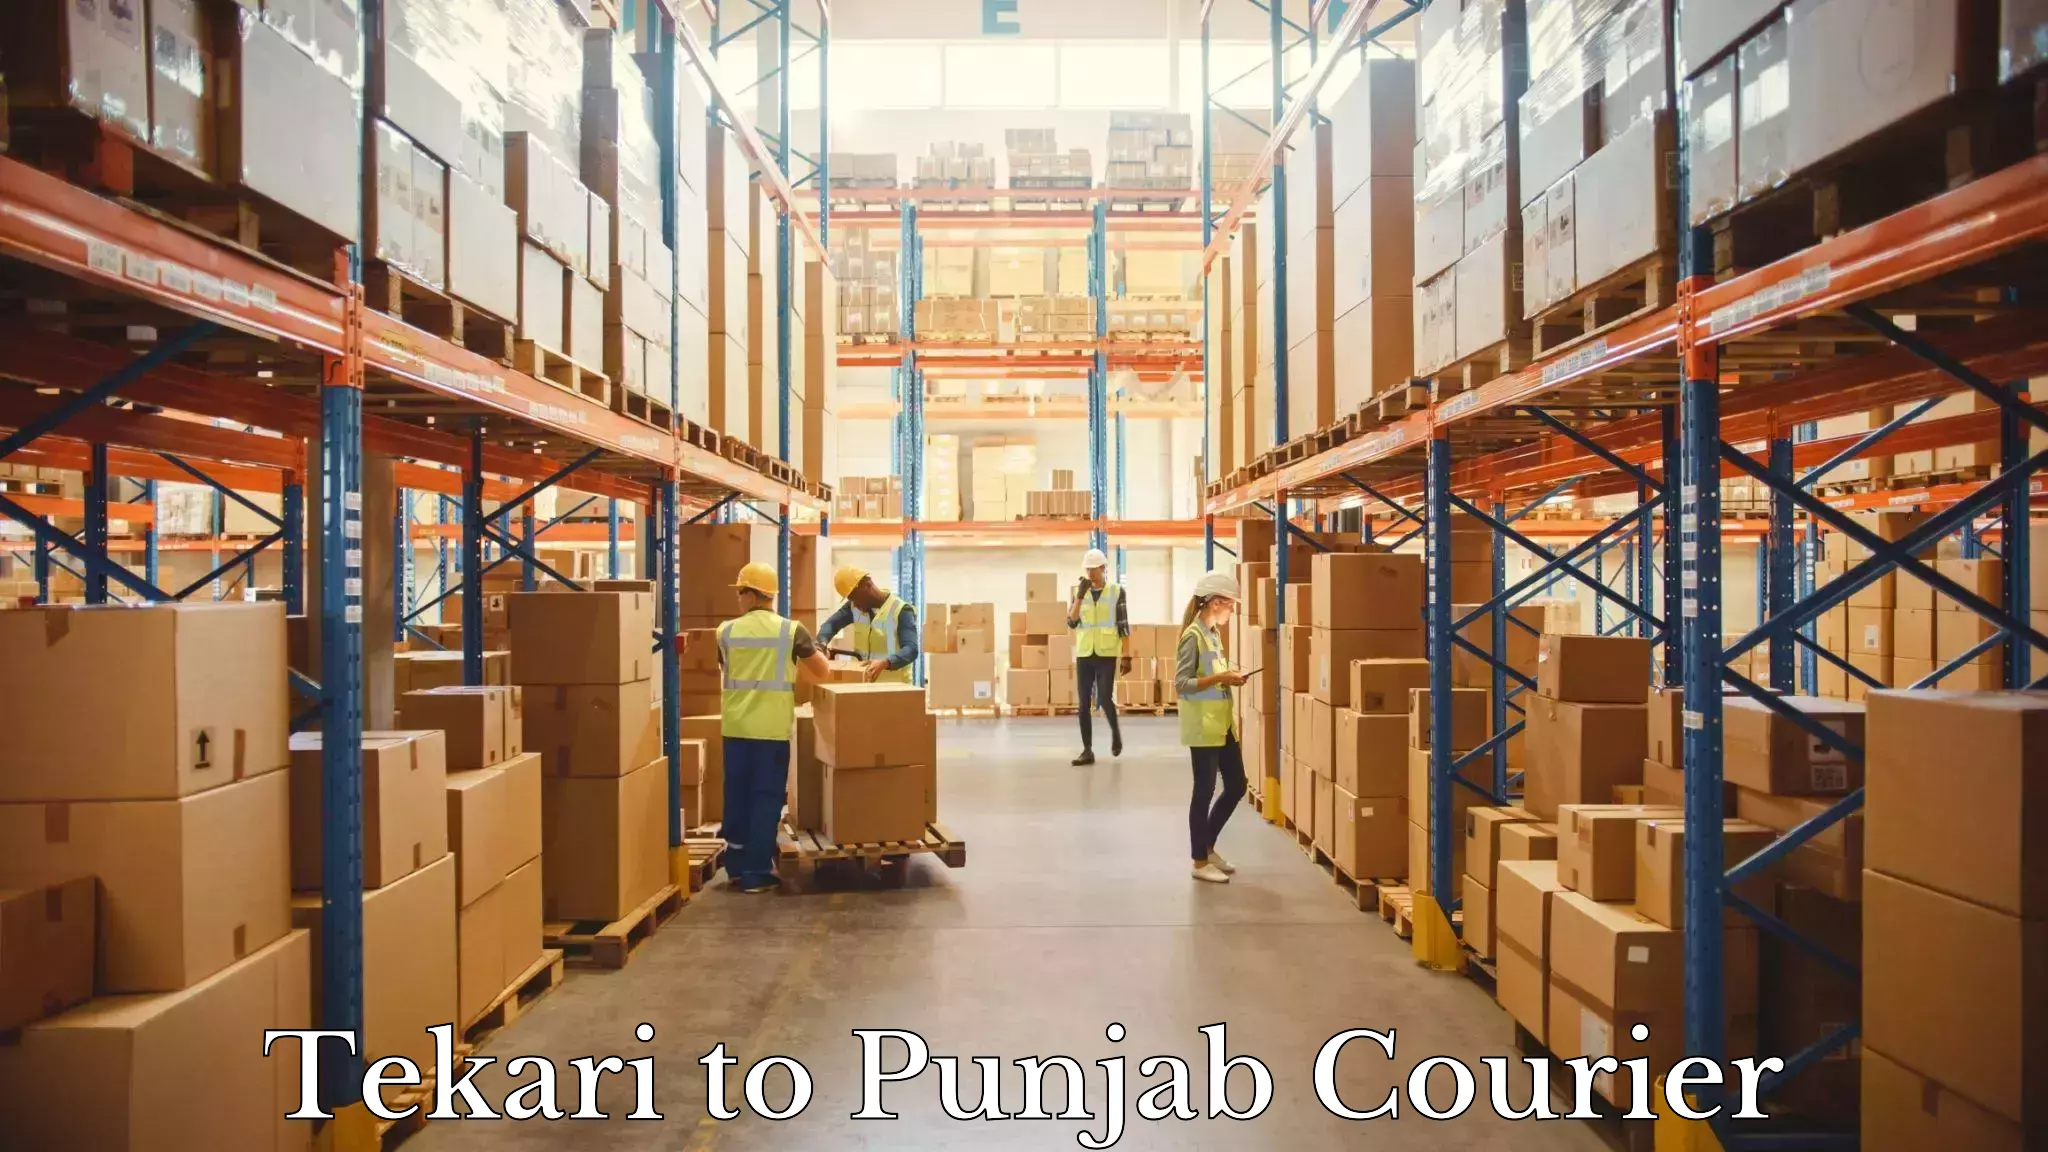 Advanced courier platforms in Tekari to Punjab